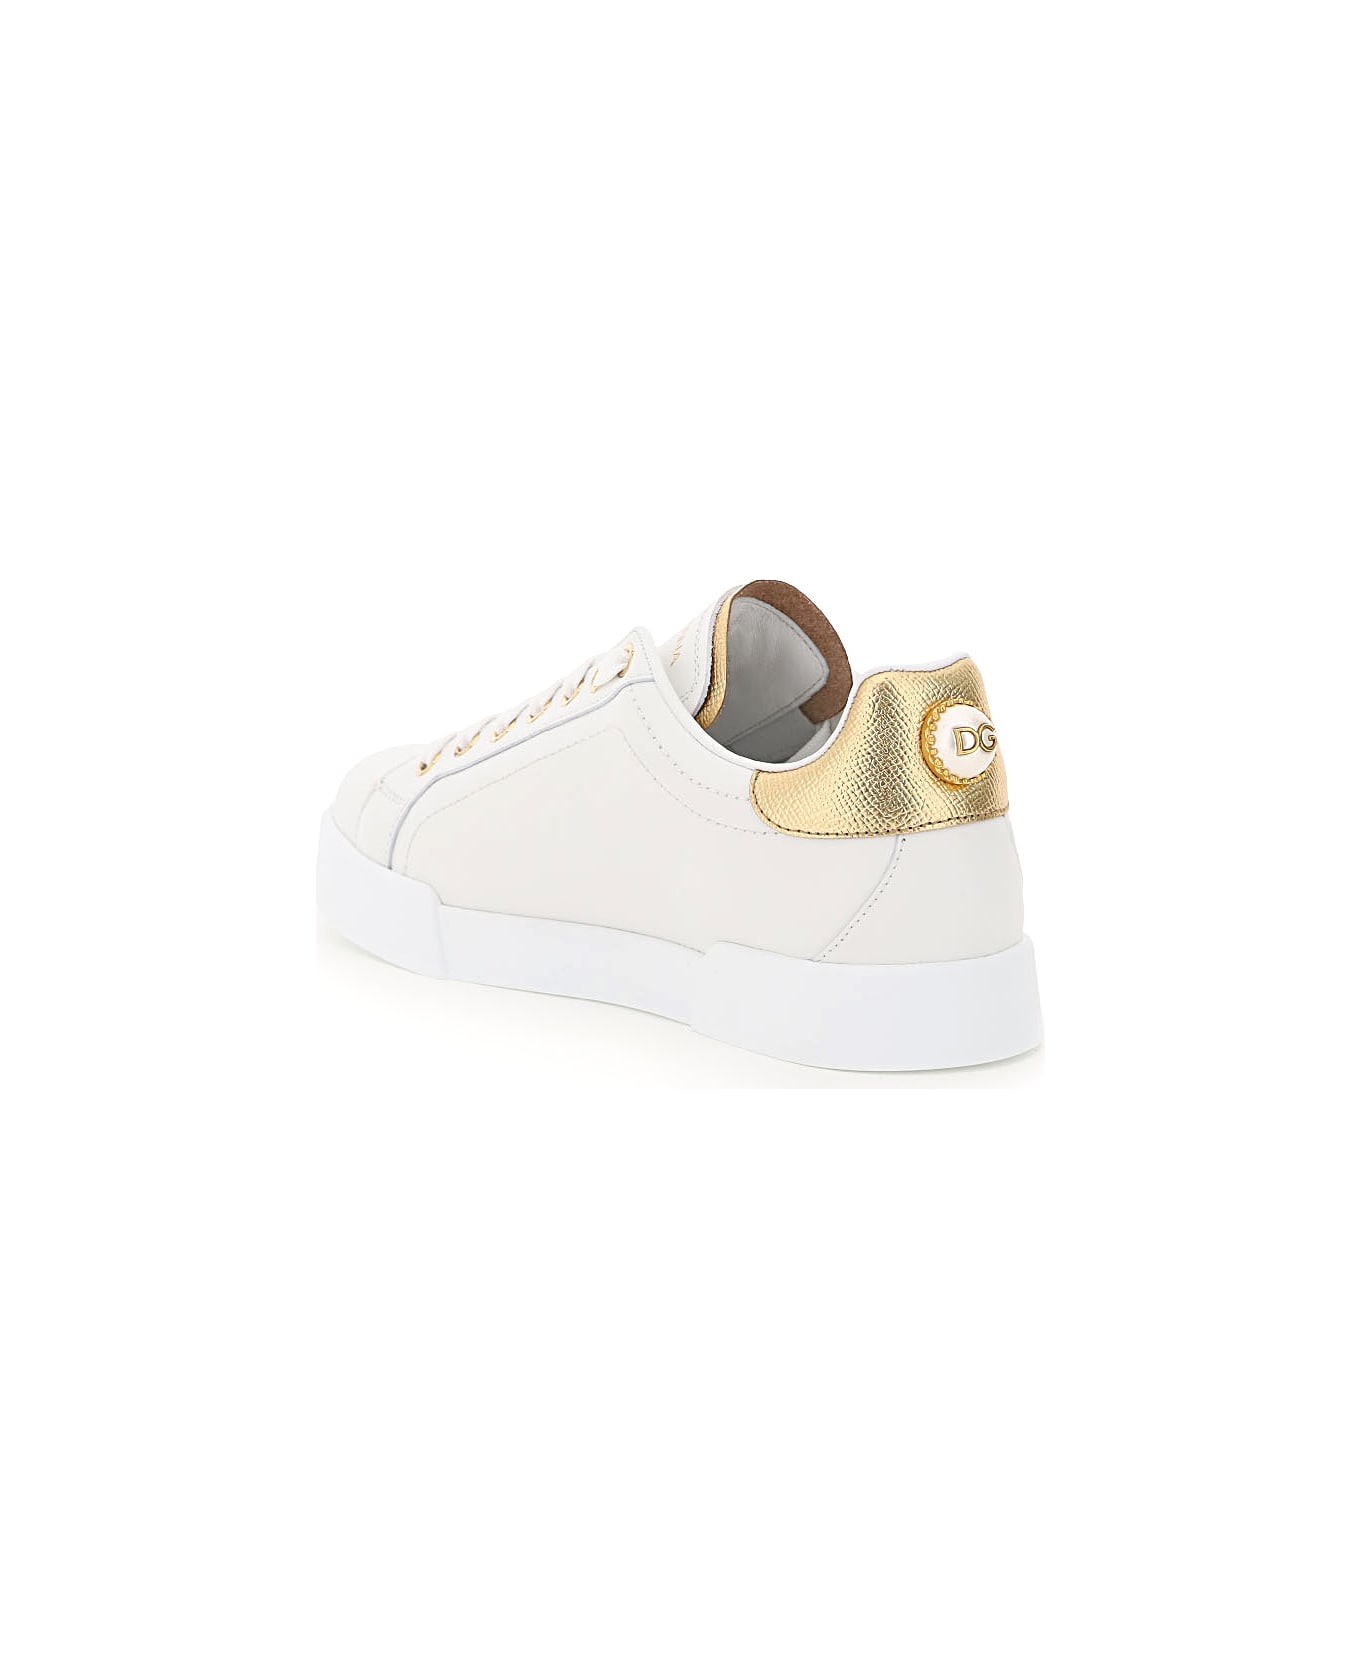 Dolce & Gabbana Portofino Sneakers With Pearl - Bianco/oro